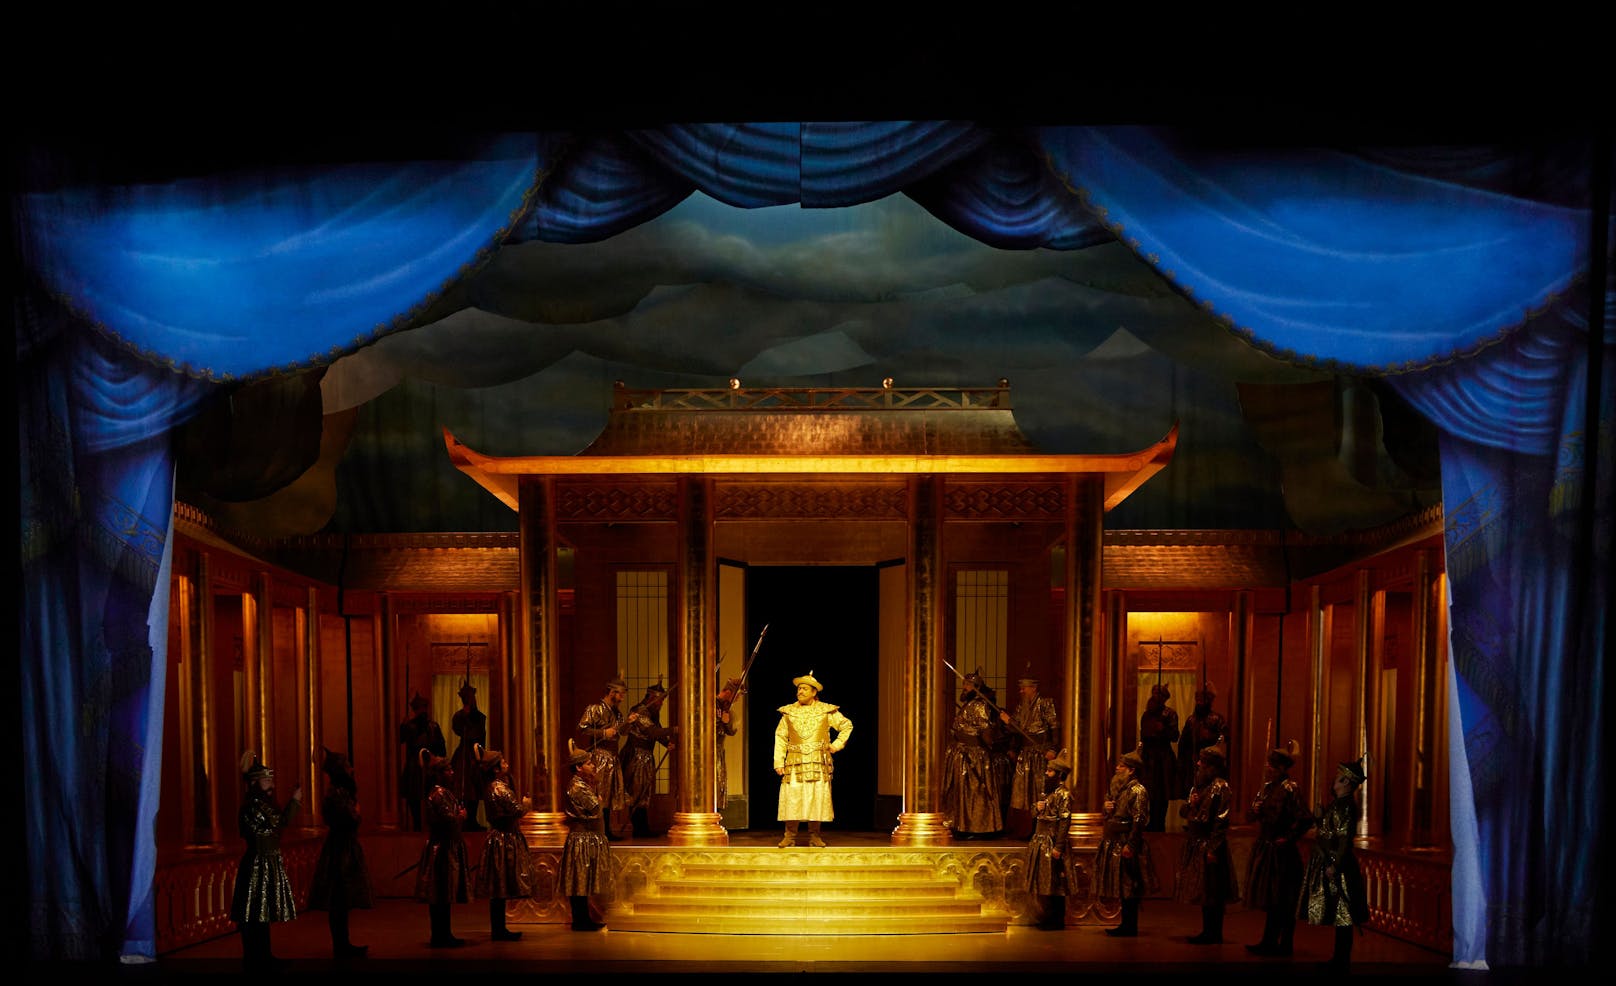 Am Musiktheater an der Wien feiert das Stück "Kublai Khan" über 200 Jahre nach Erstellung Uraufführung.